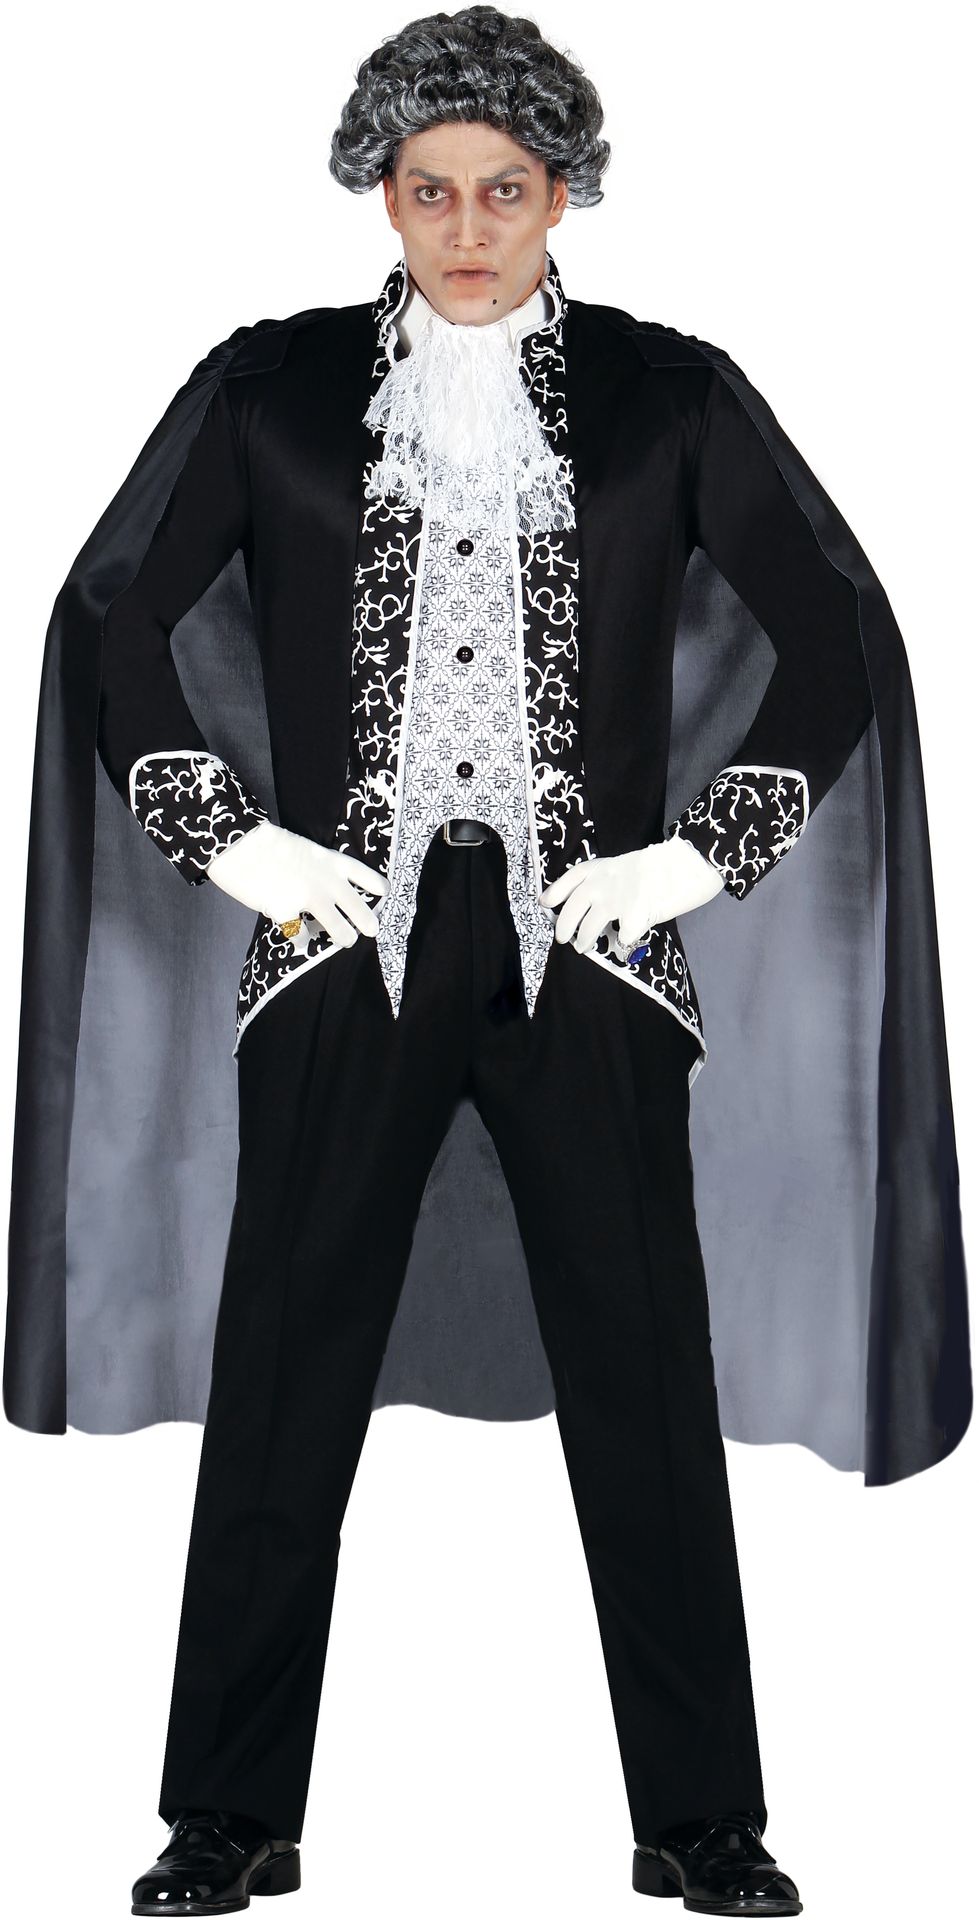 Royal vampier kostuum